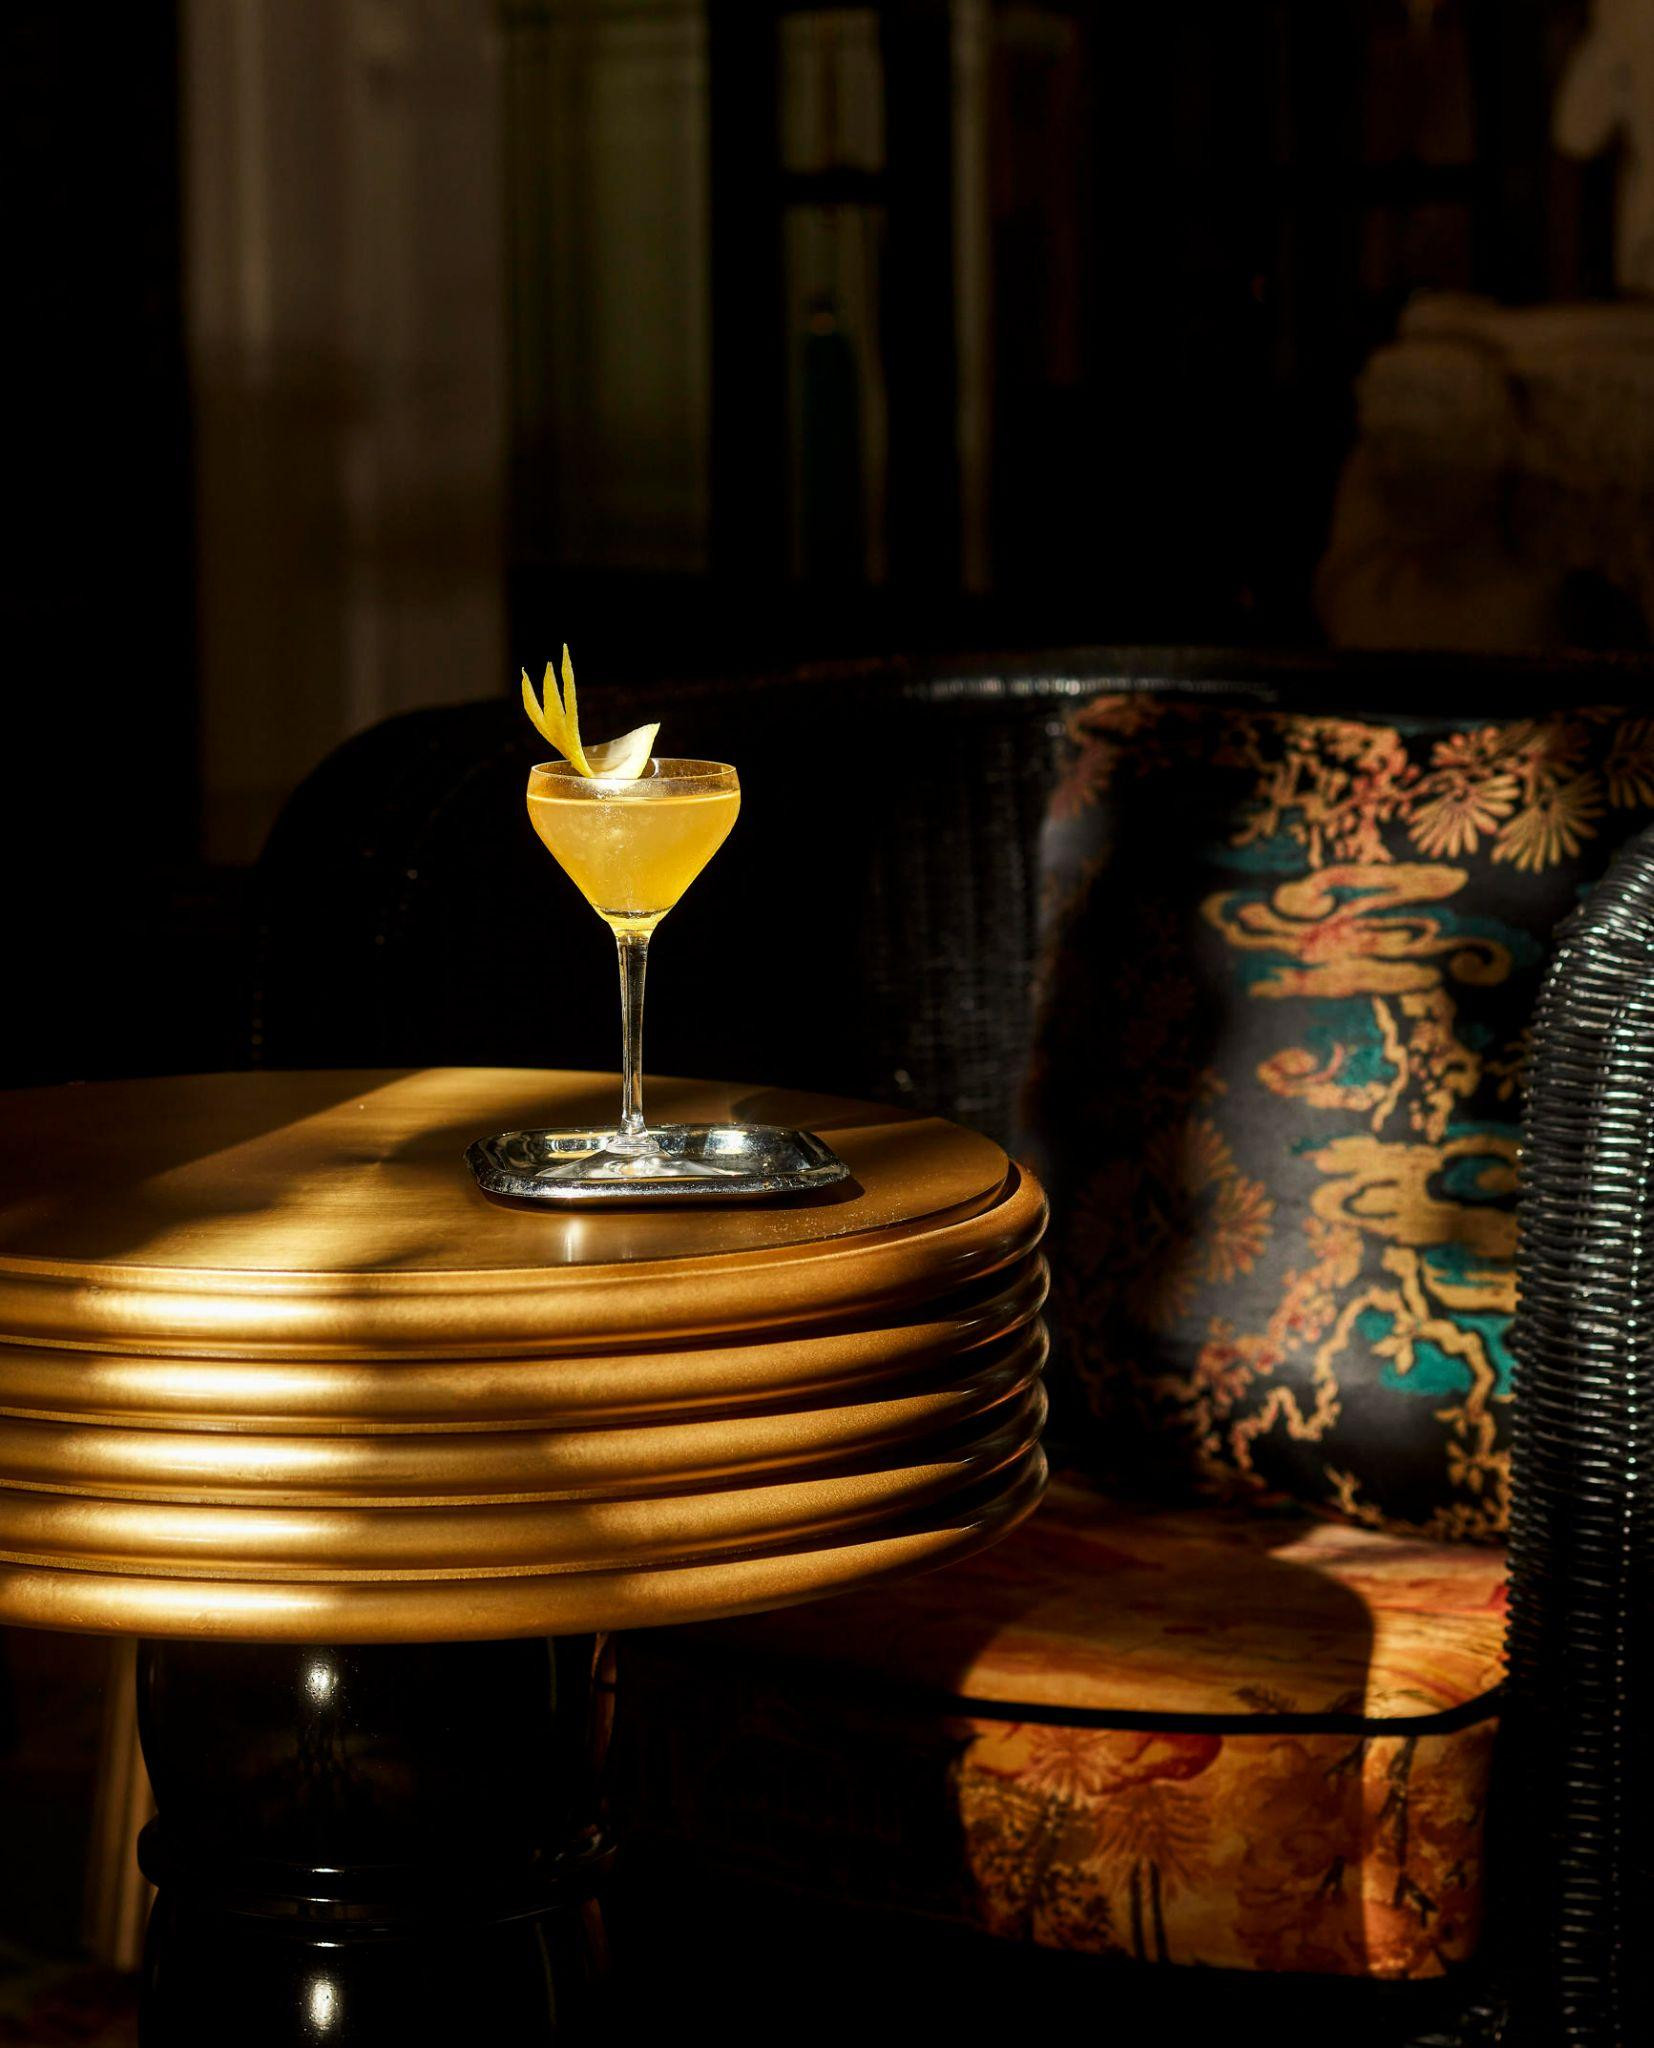 20th Century là một trong hai loại cocktail cổ điển nổi bật trong bộ sưu tập.